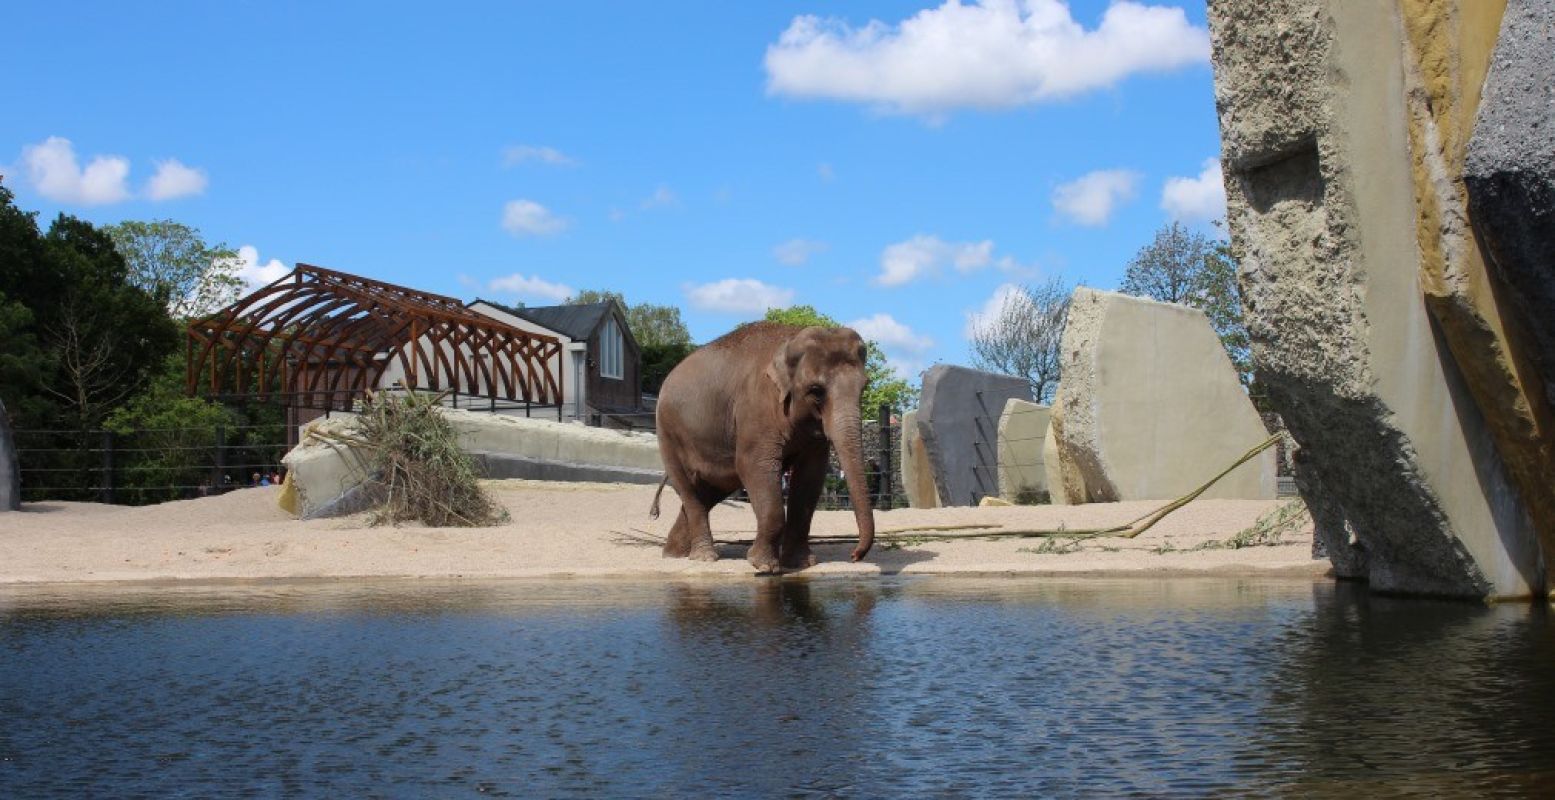 Olifanten houden van water en dat is er genoeg in het nieuwe verblijf, zo is de kans groot dat je als bezoeker oog in oog staat met een zwemmende olifant in ARTIS! Foto: Redactie DagjeWeg.NL